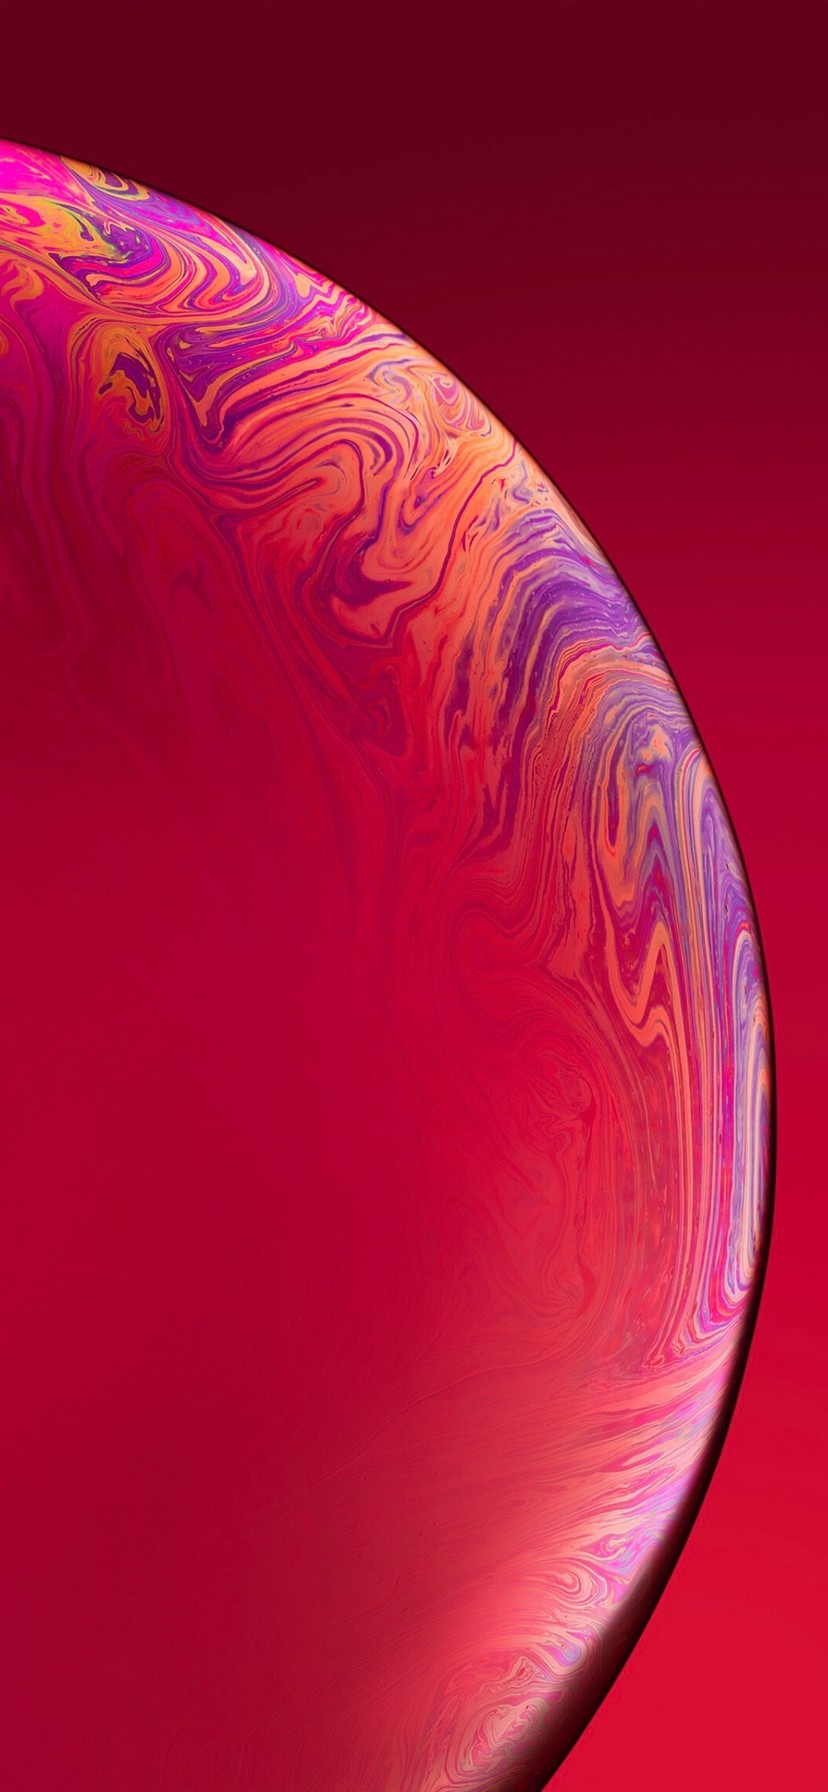 fondo de pantalla de inicio,rojo,rosado,púrpura,naranja,violeta